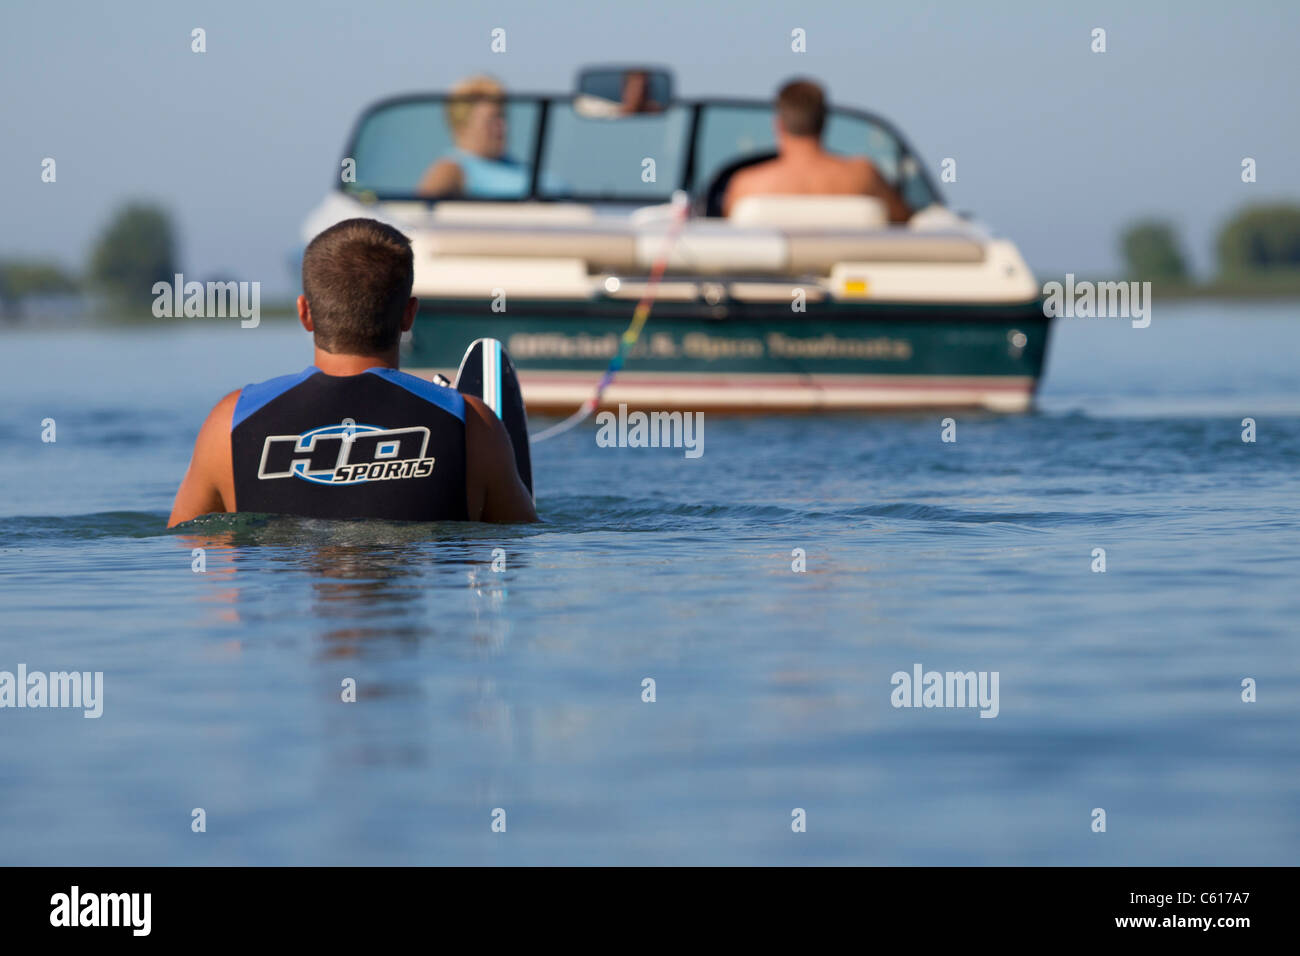 Uno sciatore in piedi in acqua dietro la barca di traino pronto per iniziare. Foto Stock